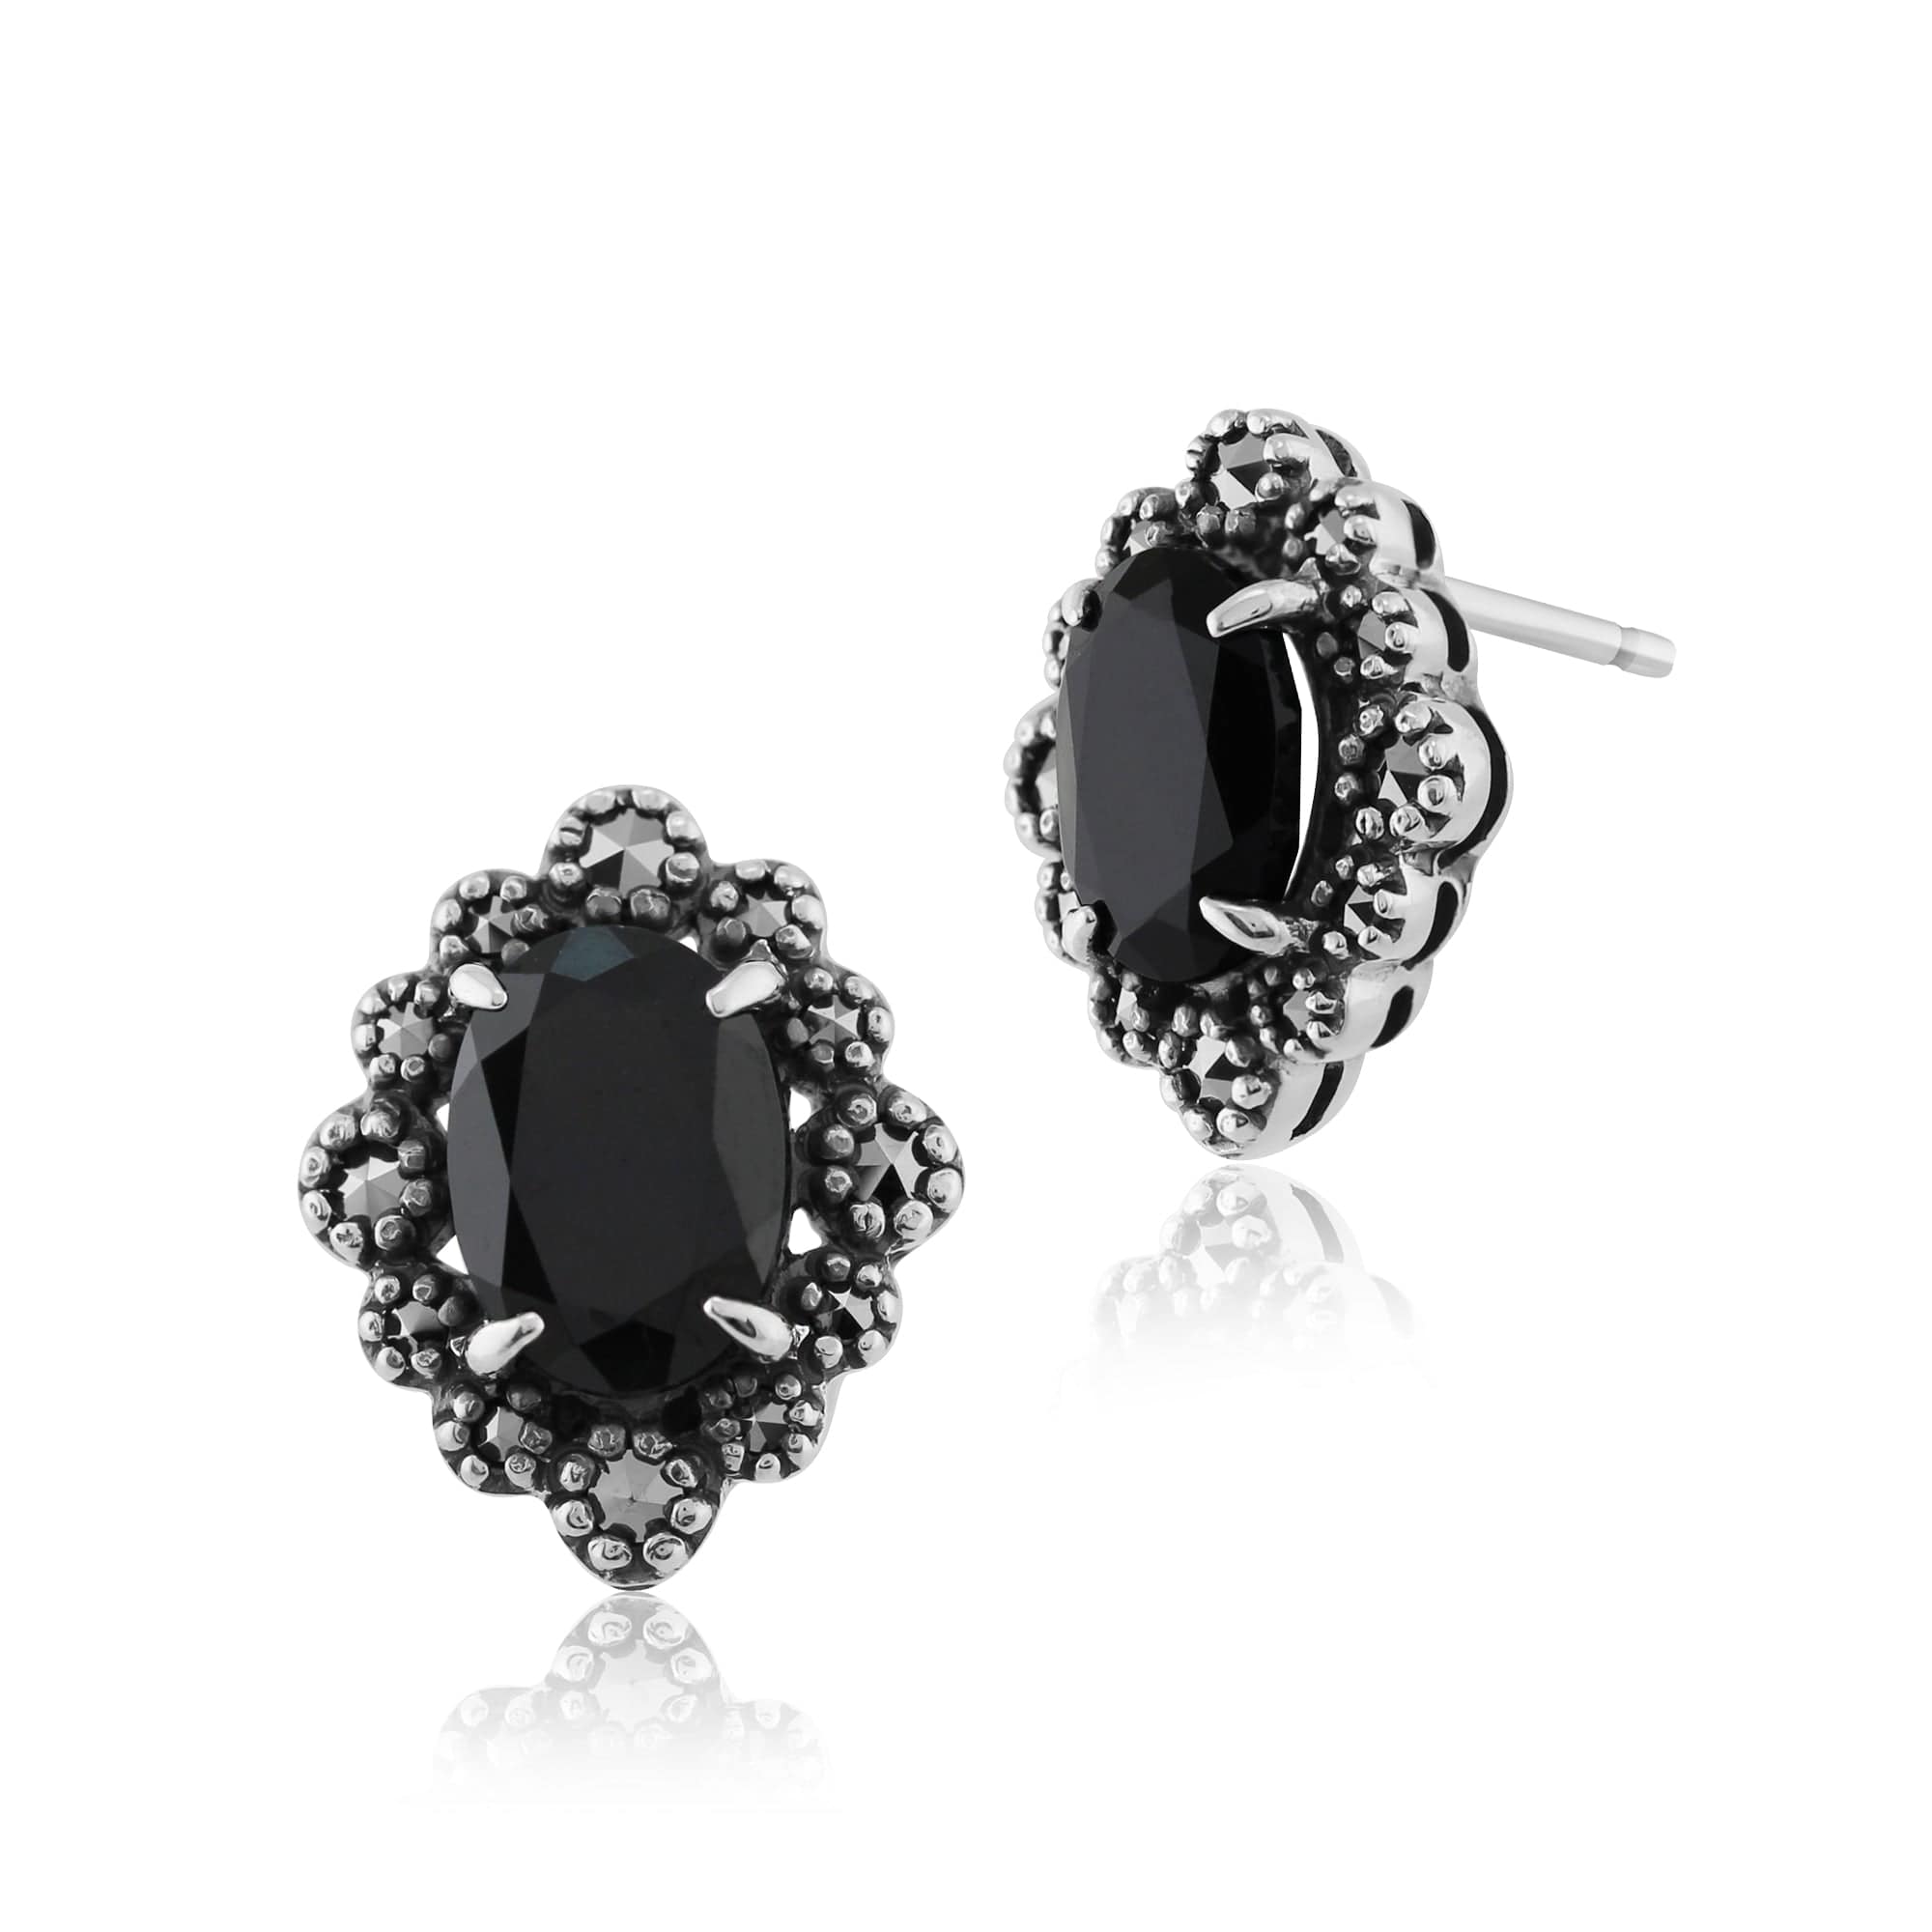 Art Deco Style Oval Black Spinel & Marcasite Stud Earrings in 925 Sterling Silver - Gemondo